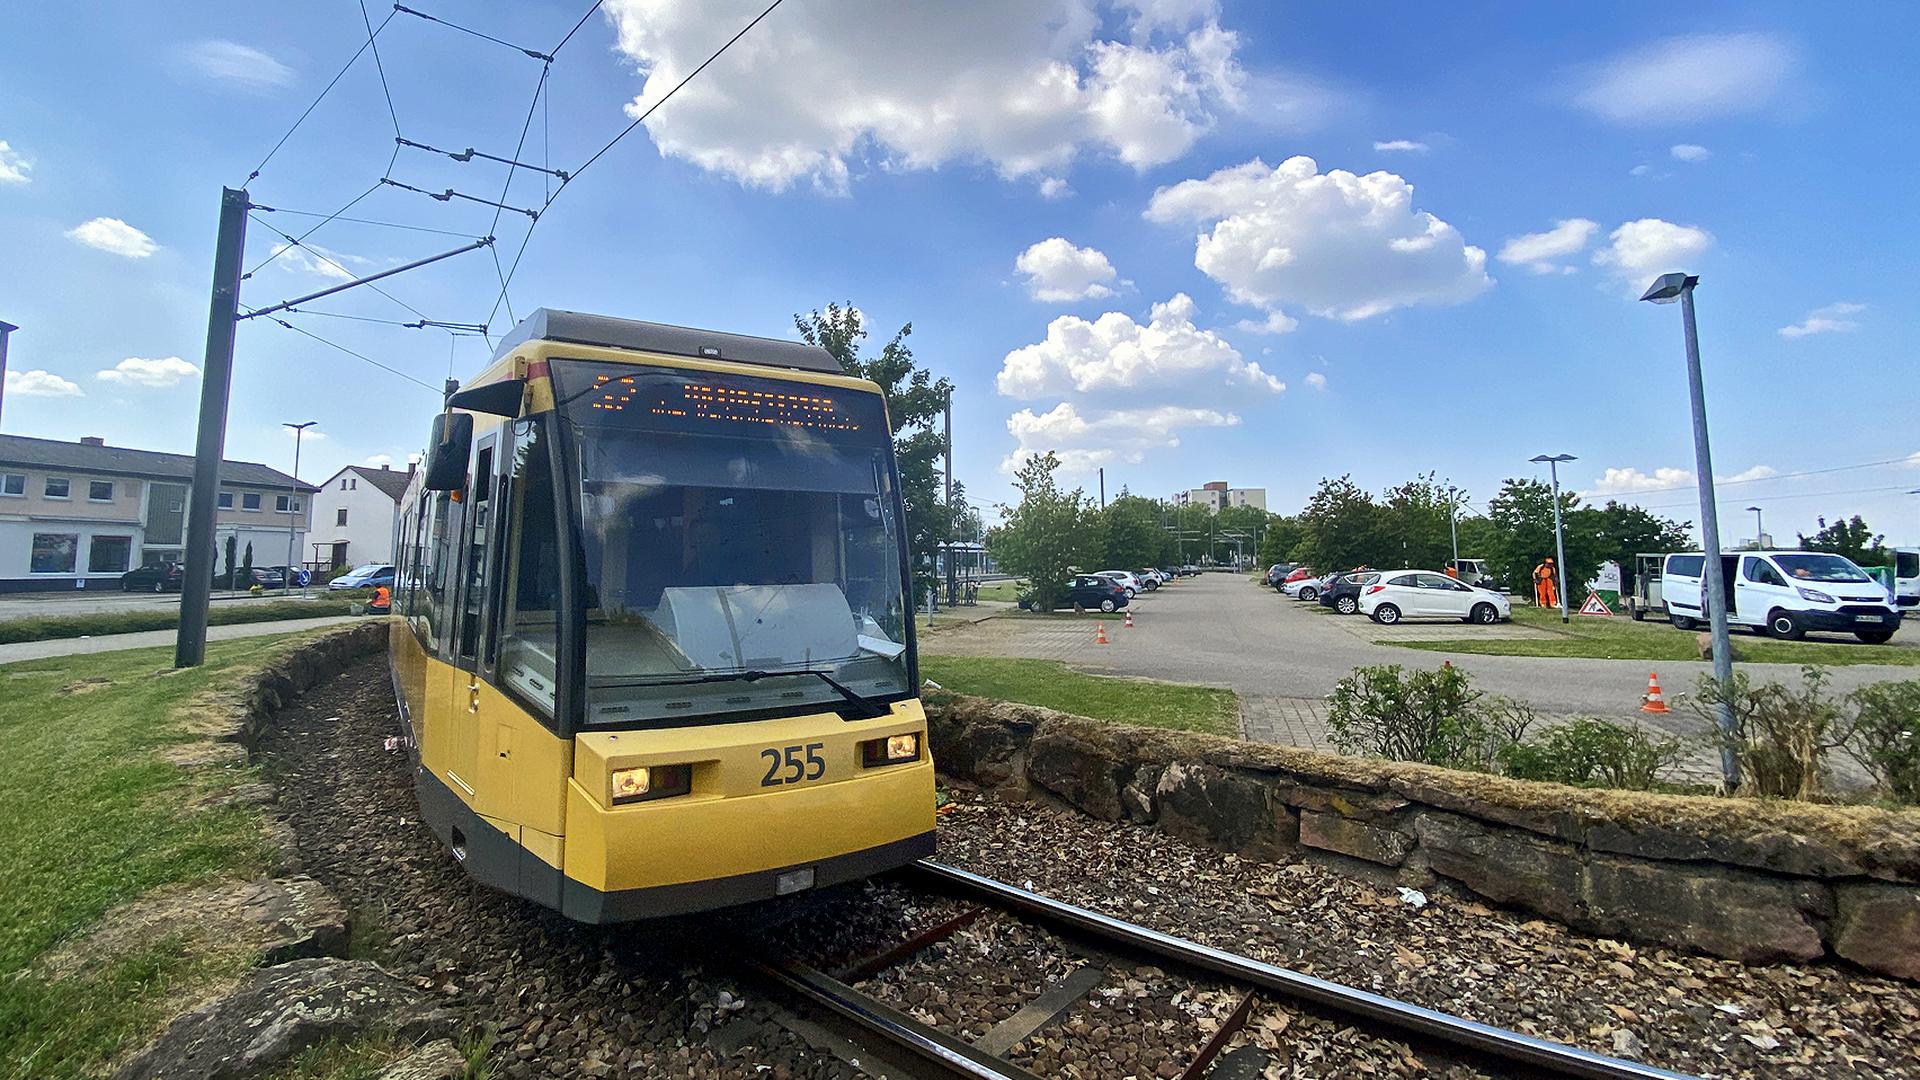 Noch wendet die S2 an dieser Stelle: Der Landkreis Karlsruhe plant unter anderem, die S-Bahn ab Spöck weiter bis nach Bruchsal auszubauen und hier eine neue Verbindung zu schaffen.